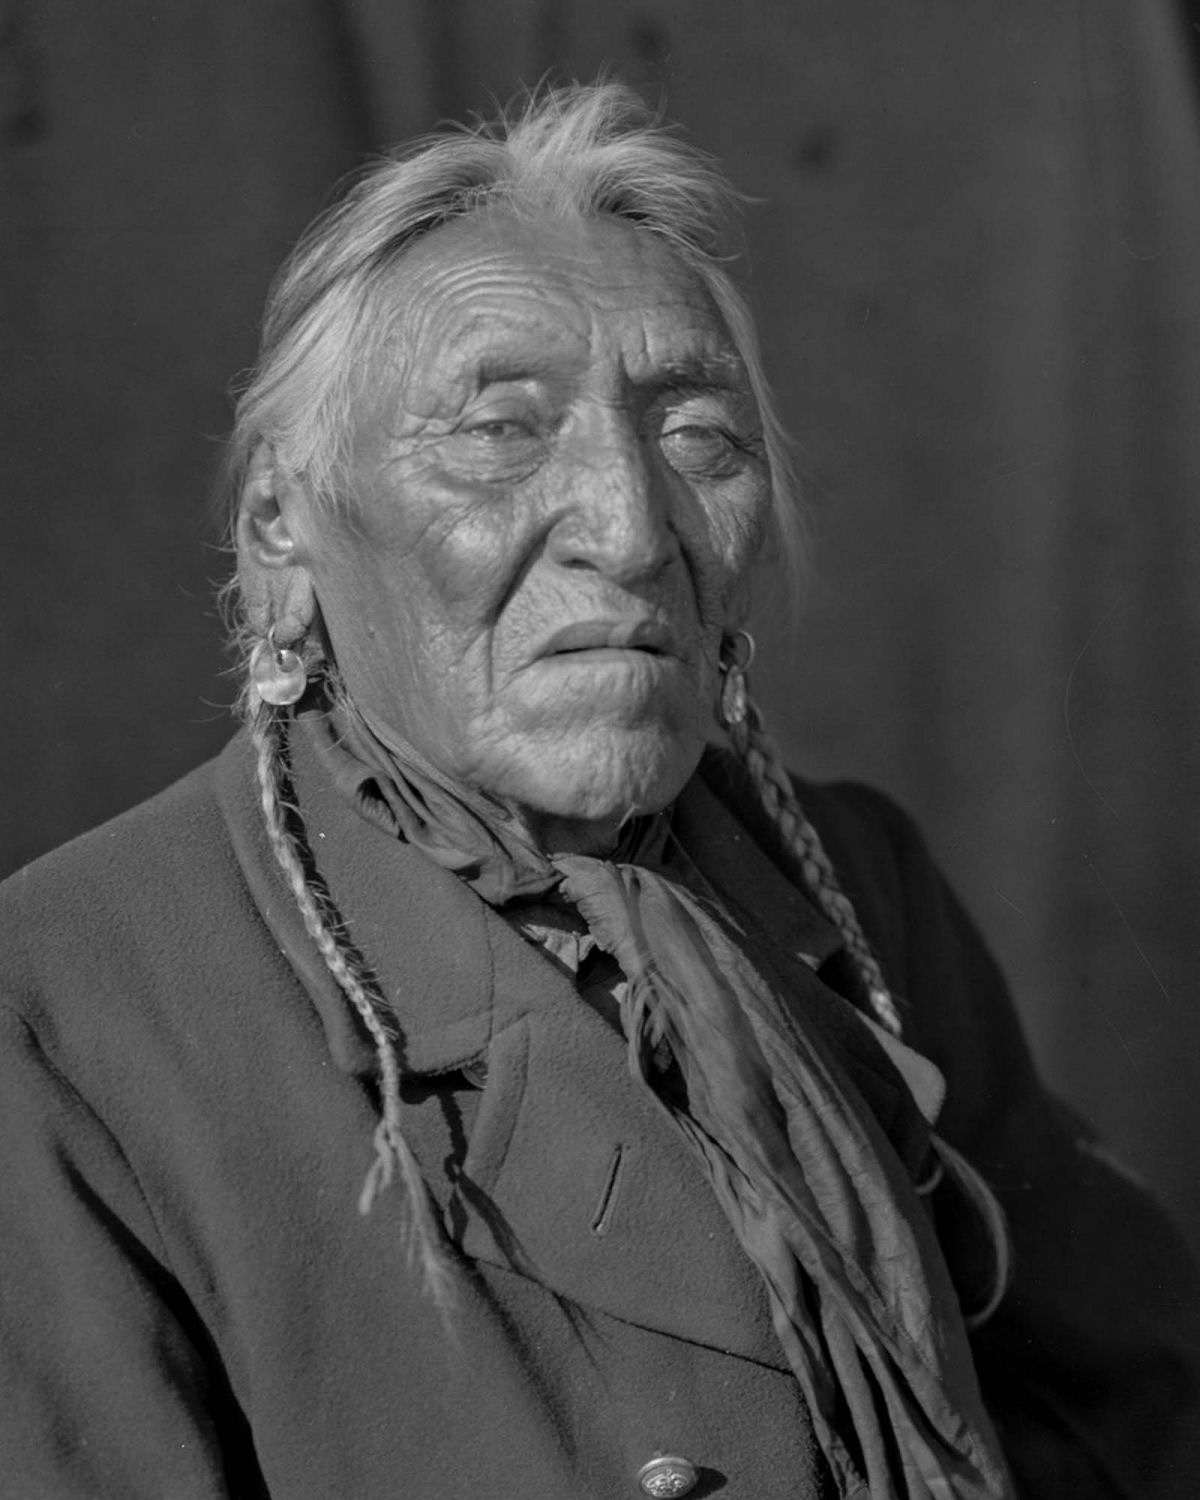 Os nativos das Primeiras Nações do Canadá em fotos históricas raras 08